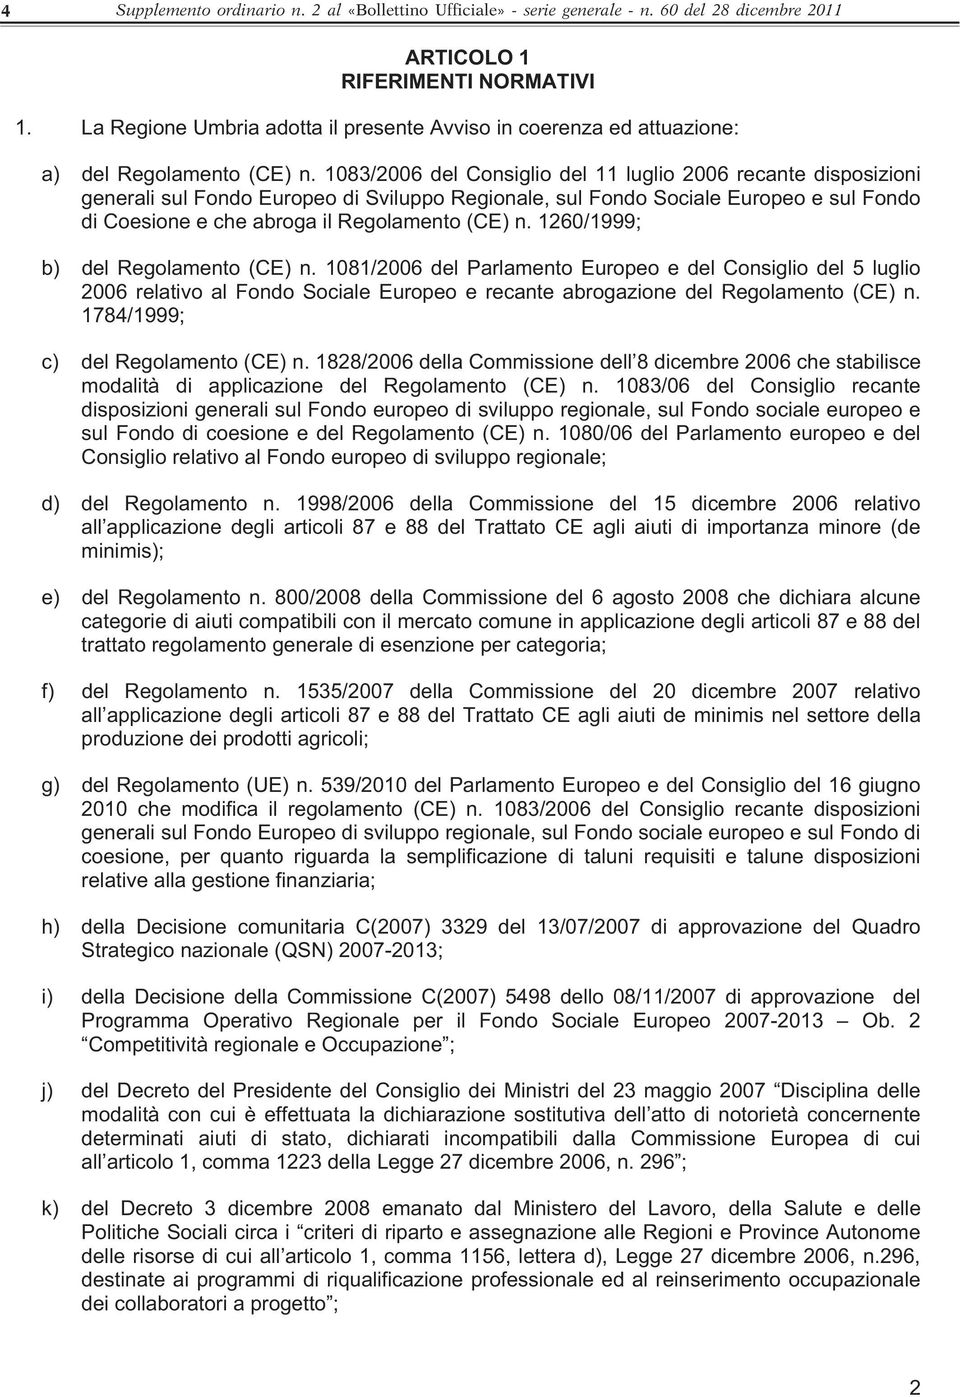 1083/2006 del Consiglio del 11 luglio 2006 recante disposizioni generali sul Fondo Europeo di Sviluppo Regionale, sul Fondo Sociale Europeo e sul Fondo di Coesione e che abroga il Regolamento (CE) n.